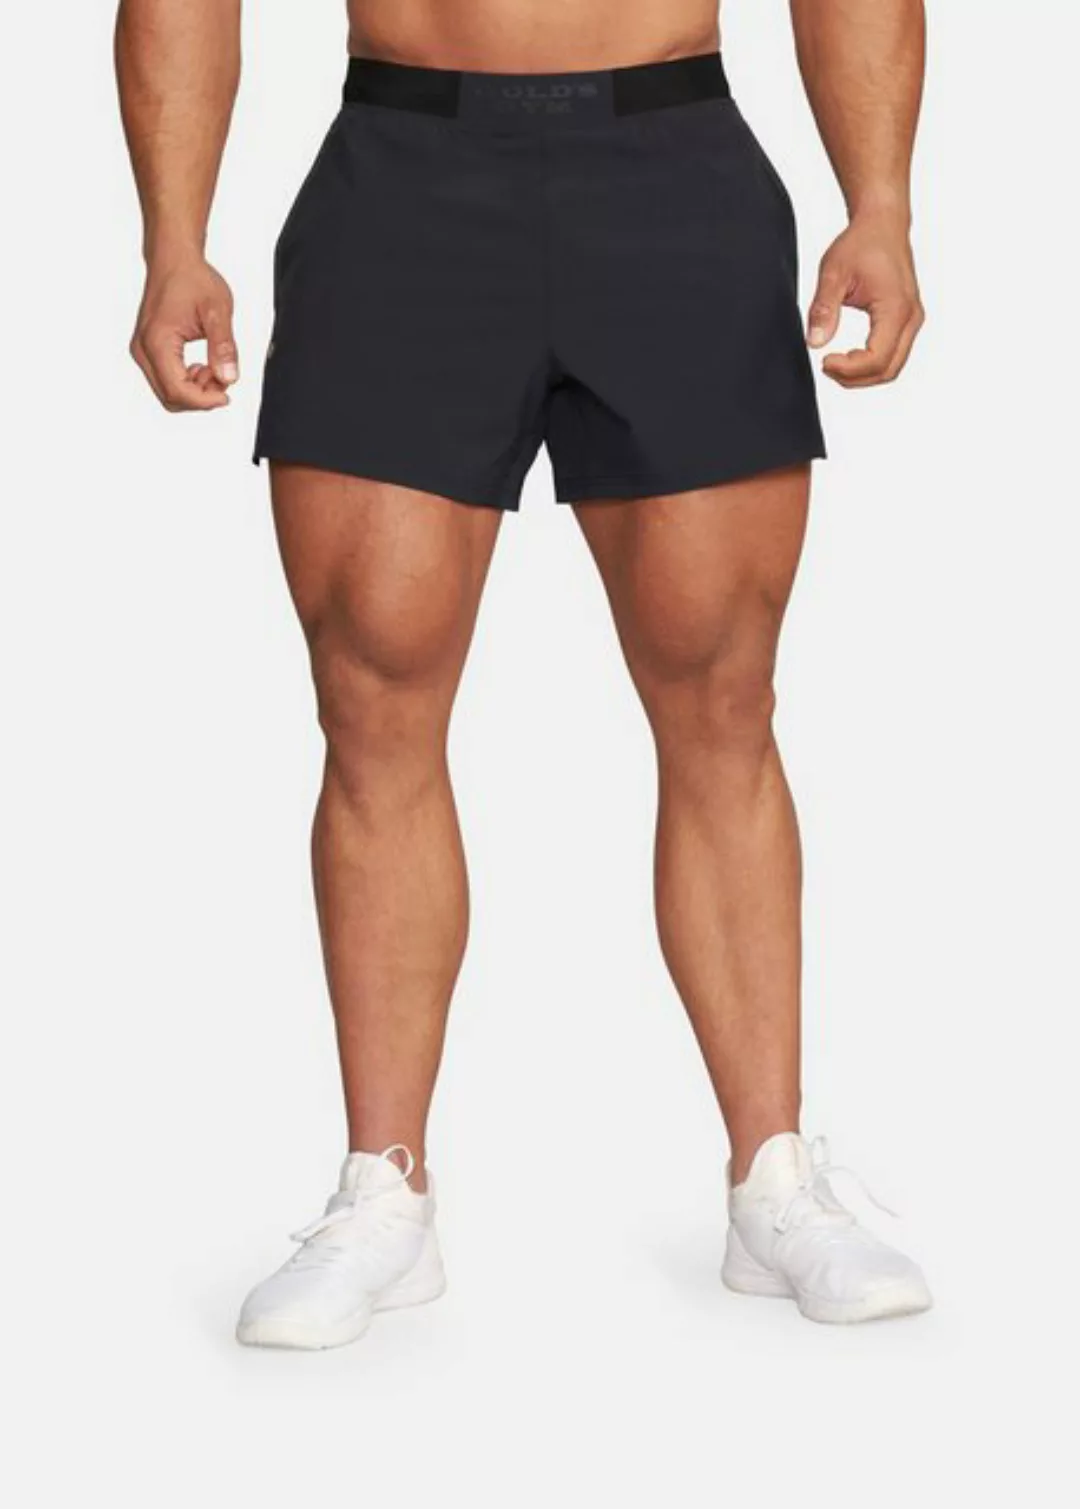 GOLD'S GYM APPAREL Shorts MARK schnelltrocknend, atmungsaktiv, elastischer günstig online kaufen